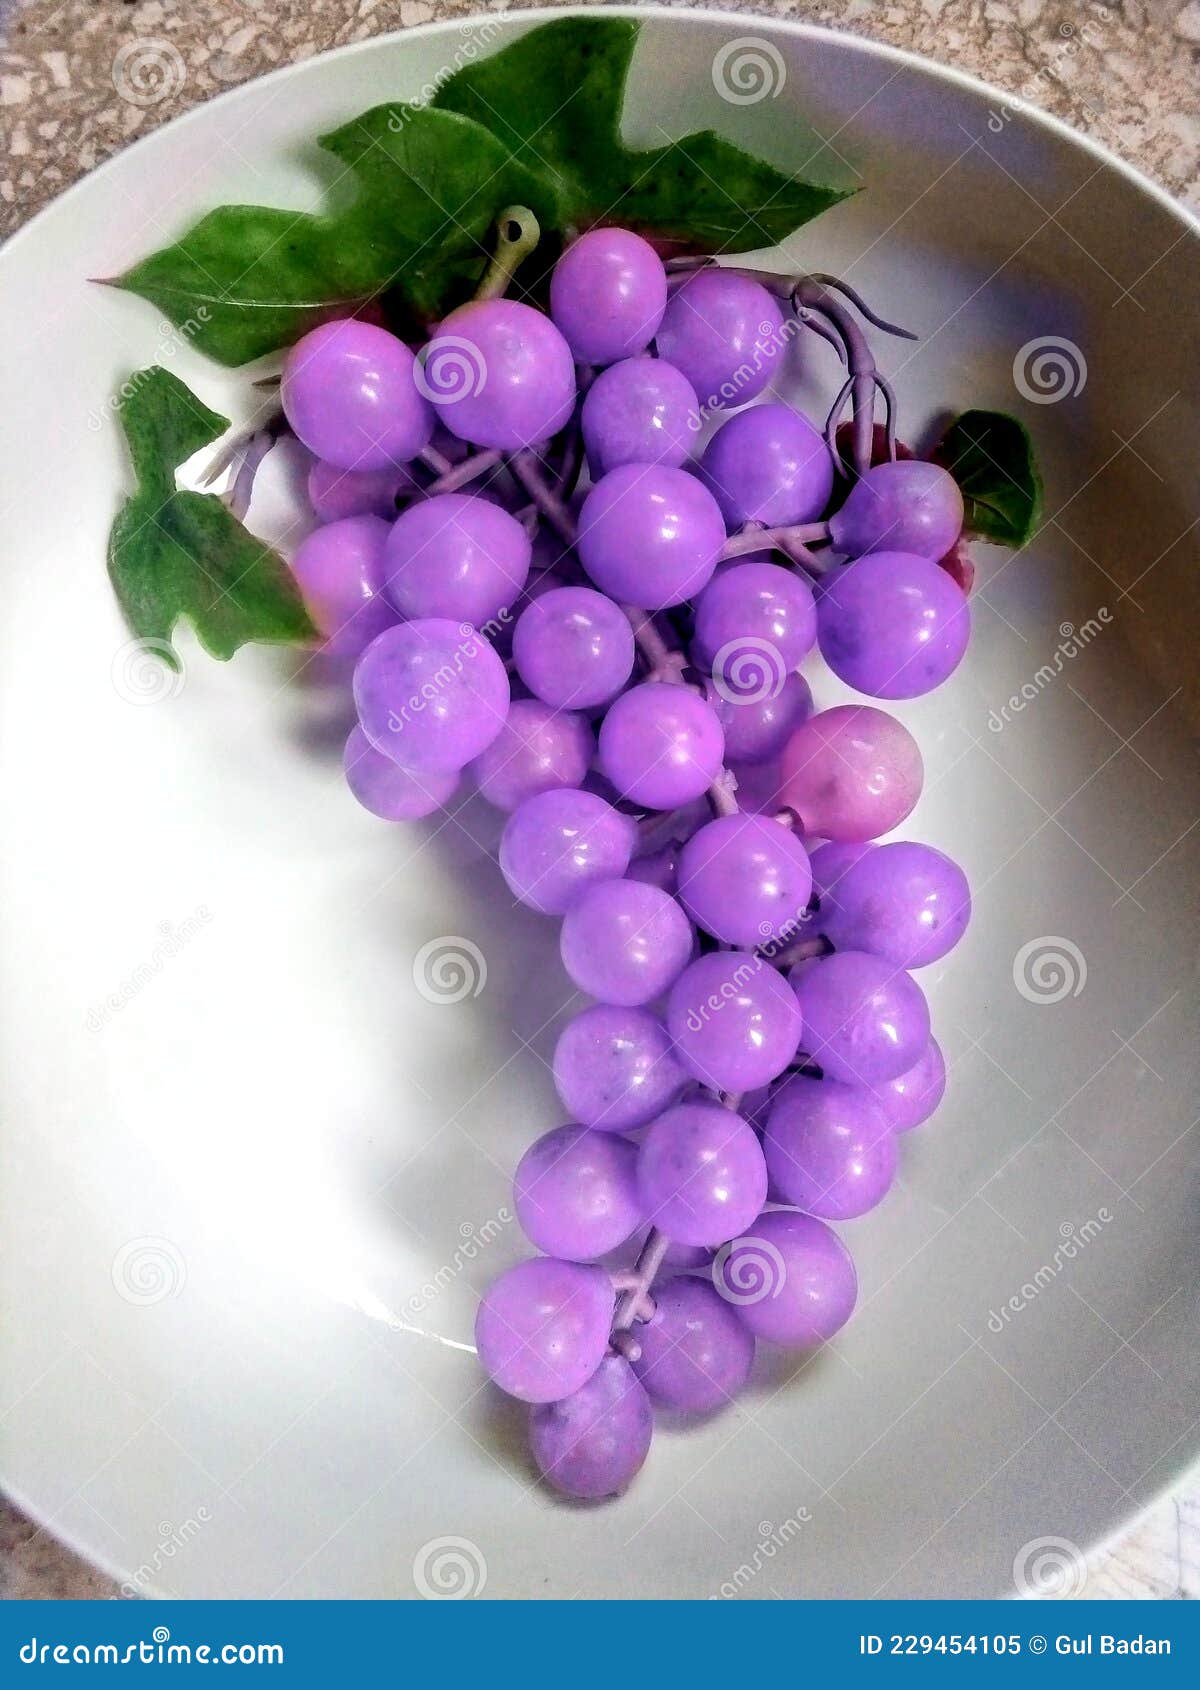 artificial grapes decorations peice purple hustle